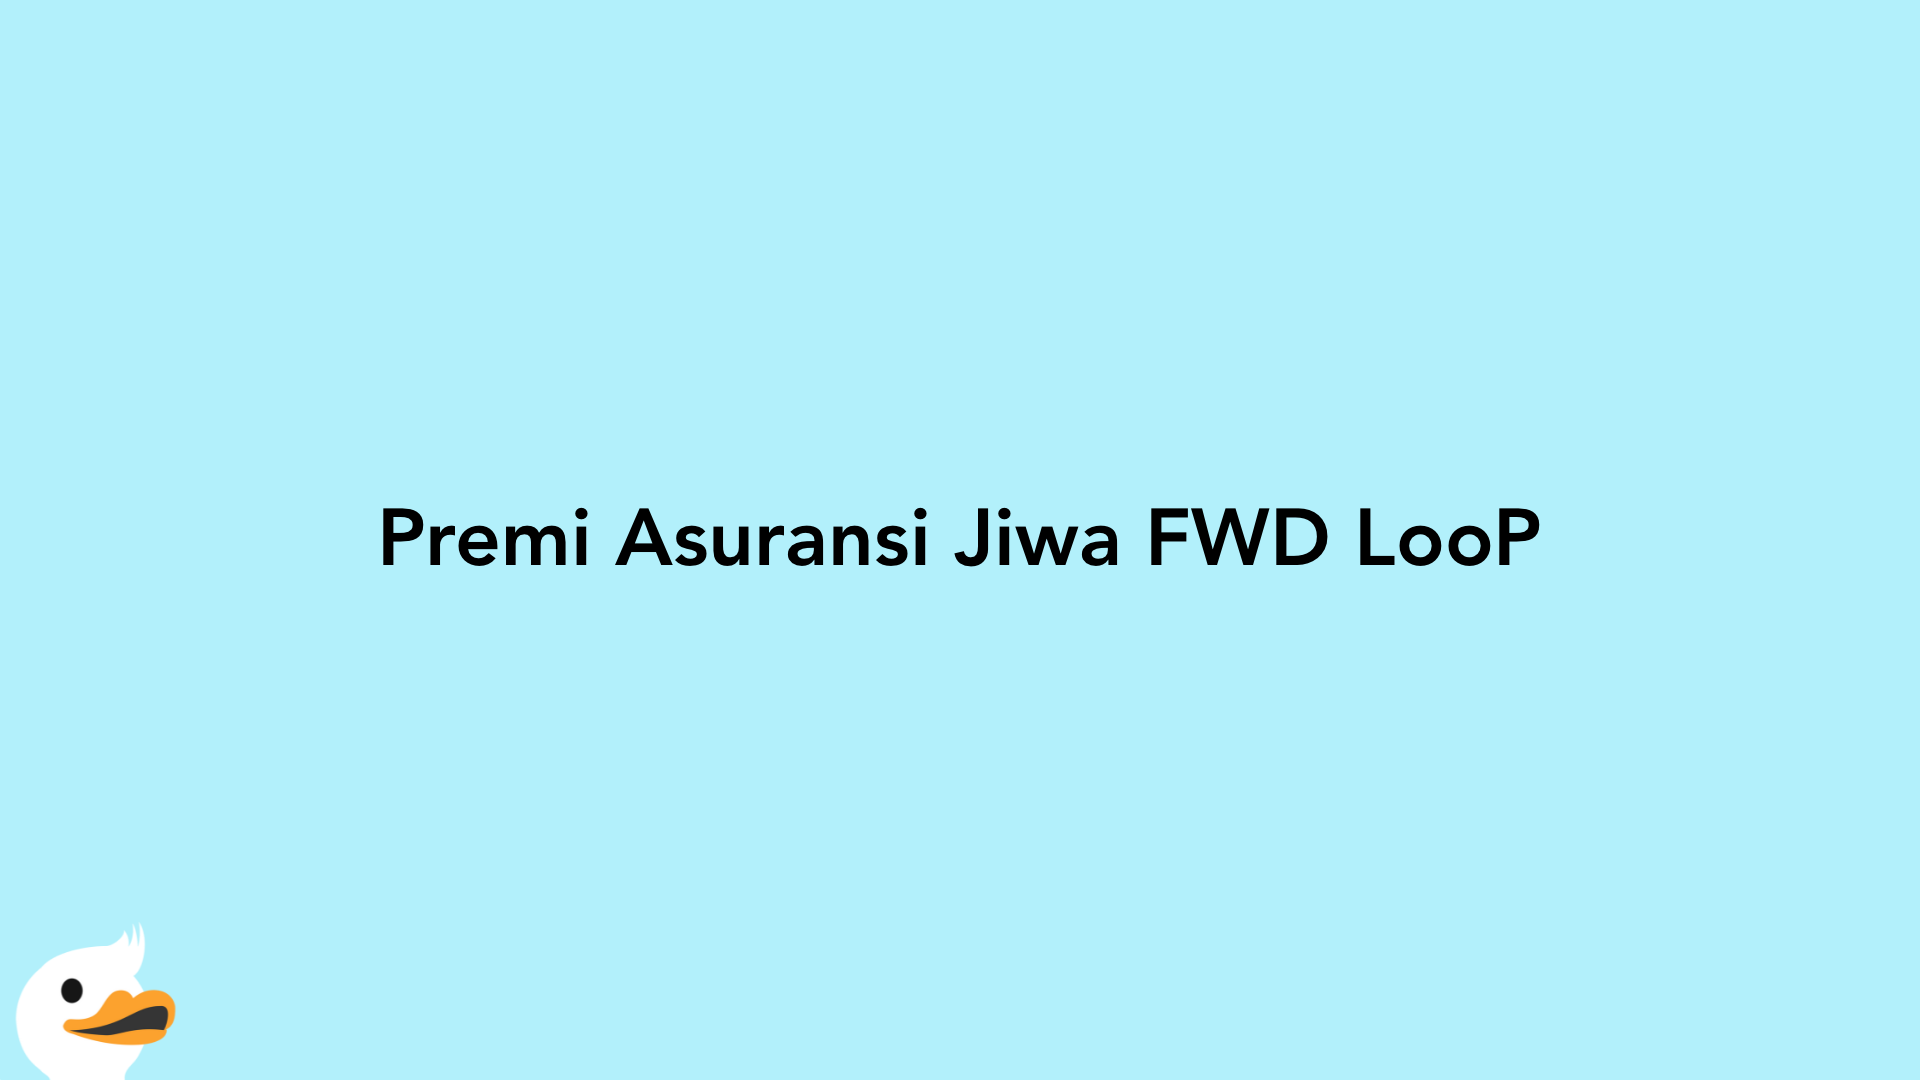 Premi Asuransi Jiwa FWD LooP